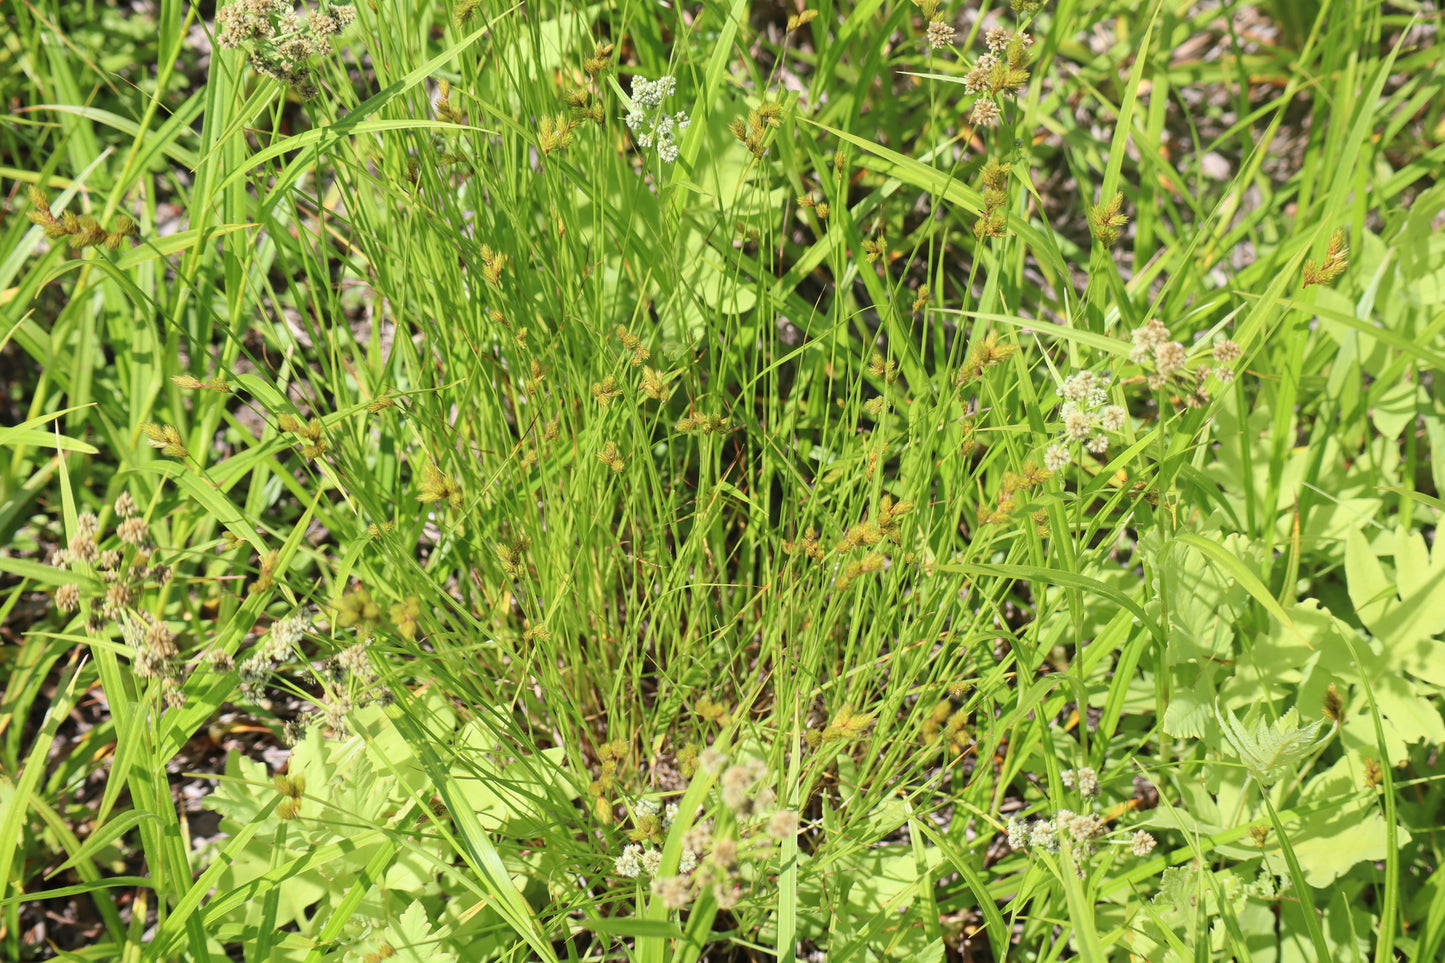 Carex crawfordii (Fr:carex de Crawford | En: Crawford's sedge)